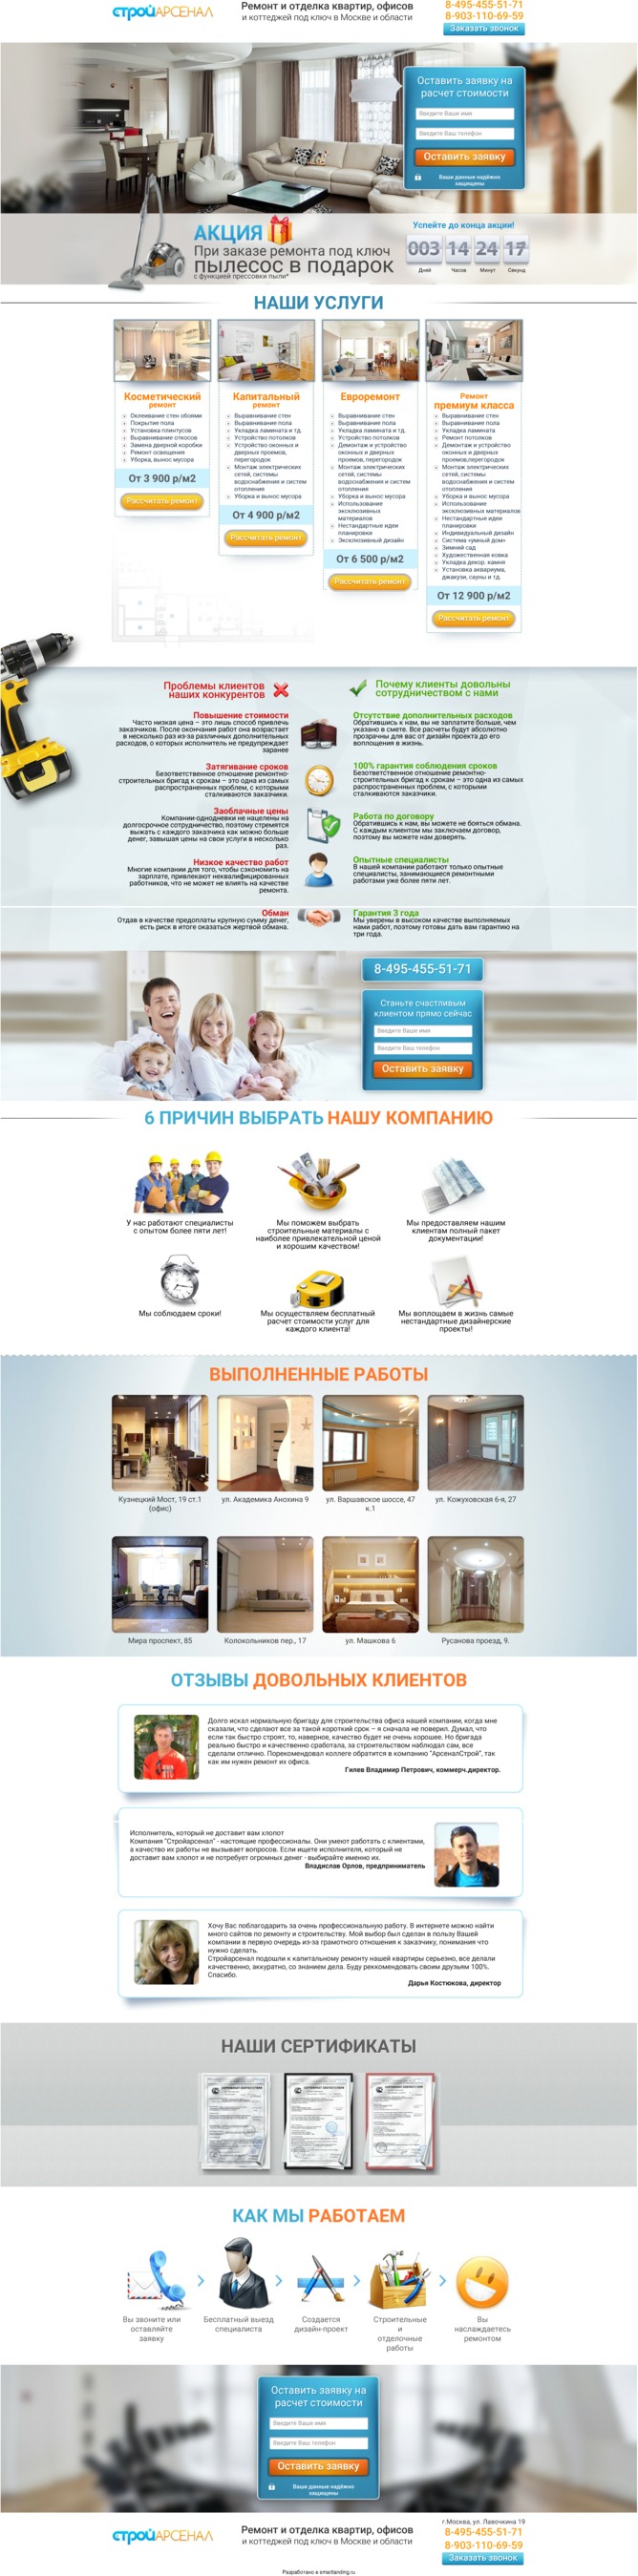 Ремонт и отделка квартир, офисов и коттеджей под ключ в Москве и области